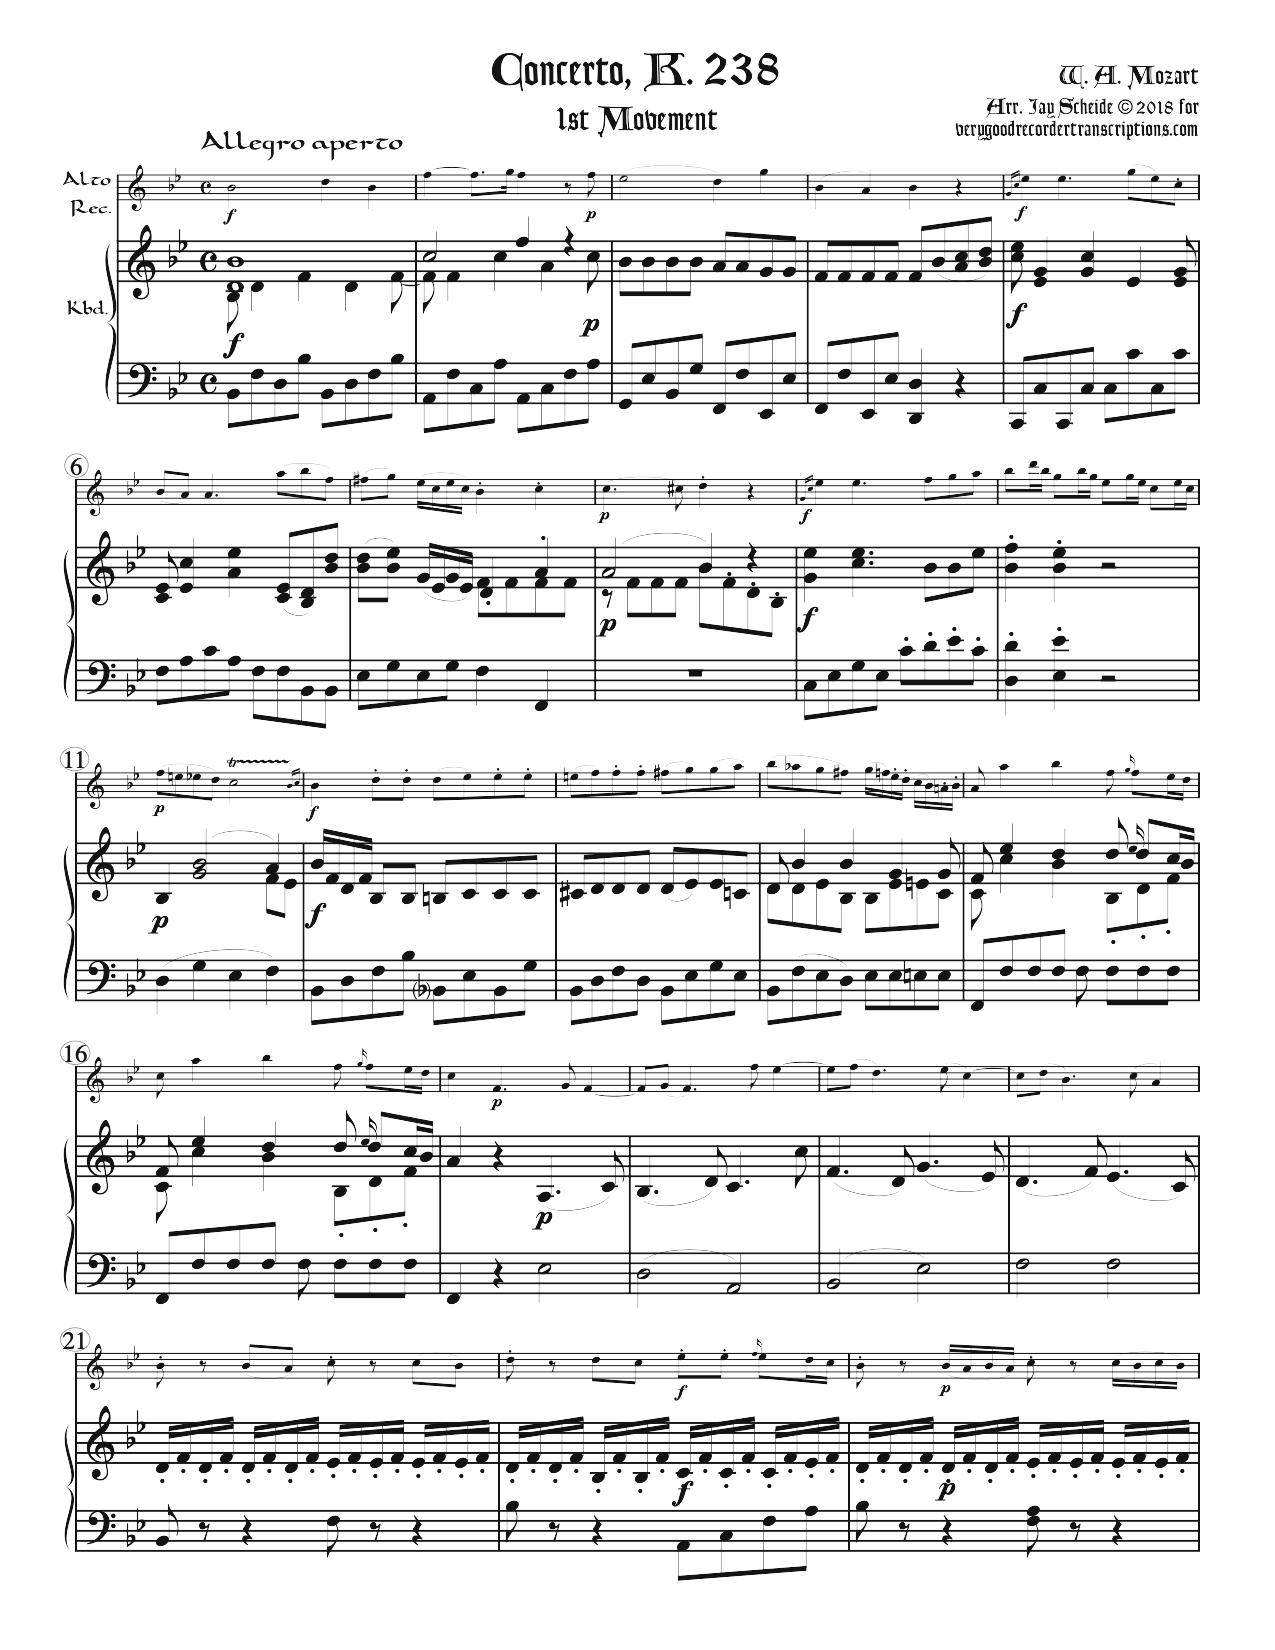 Concerto, K. 238, 1st mvt.